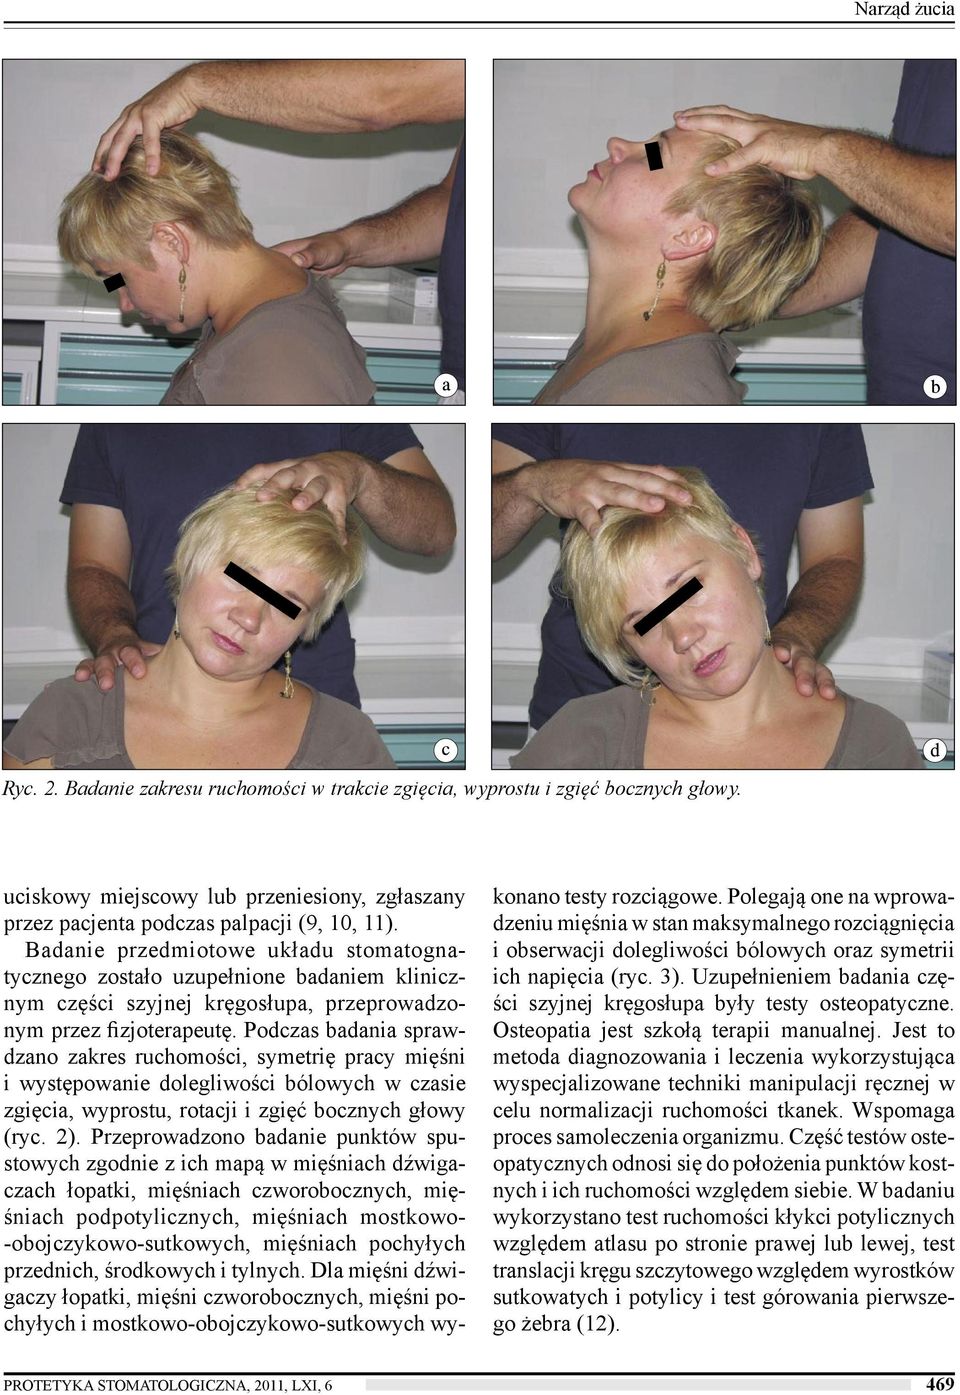 Podczas badania sprawdzano zakres ruchomości, symetrię pracy mięśni i występowanie dolegliwości bólowych w czasie zgięcia, wyprostu, rotacji i zgięć bocznych głowy (ryc. 2).